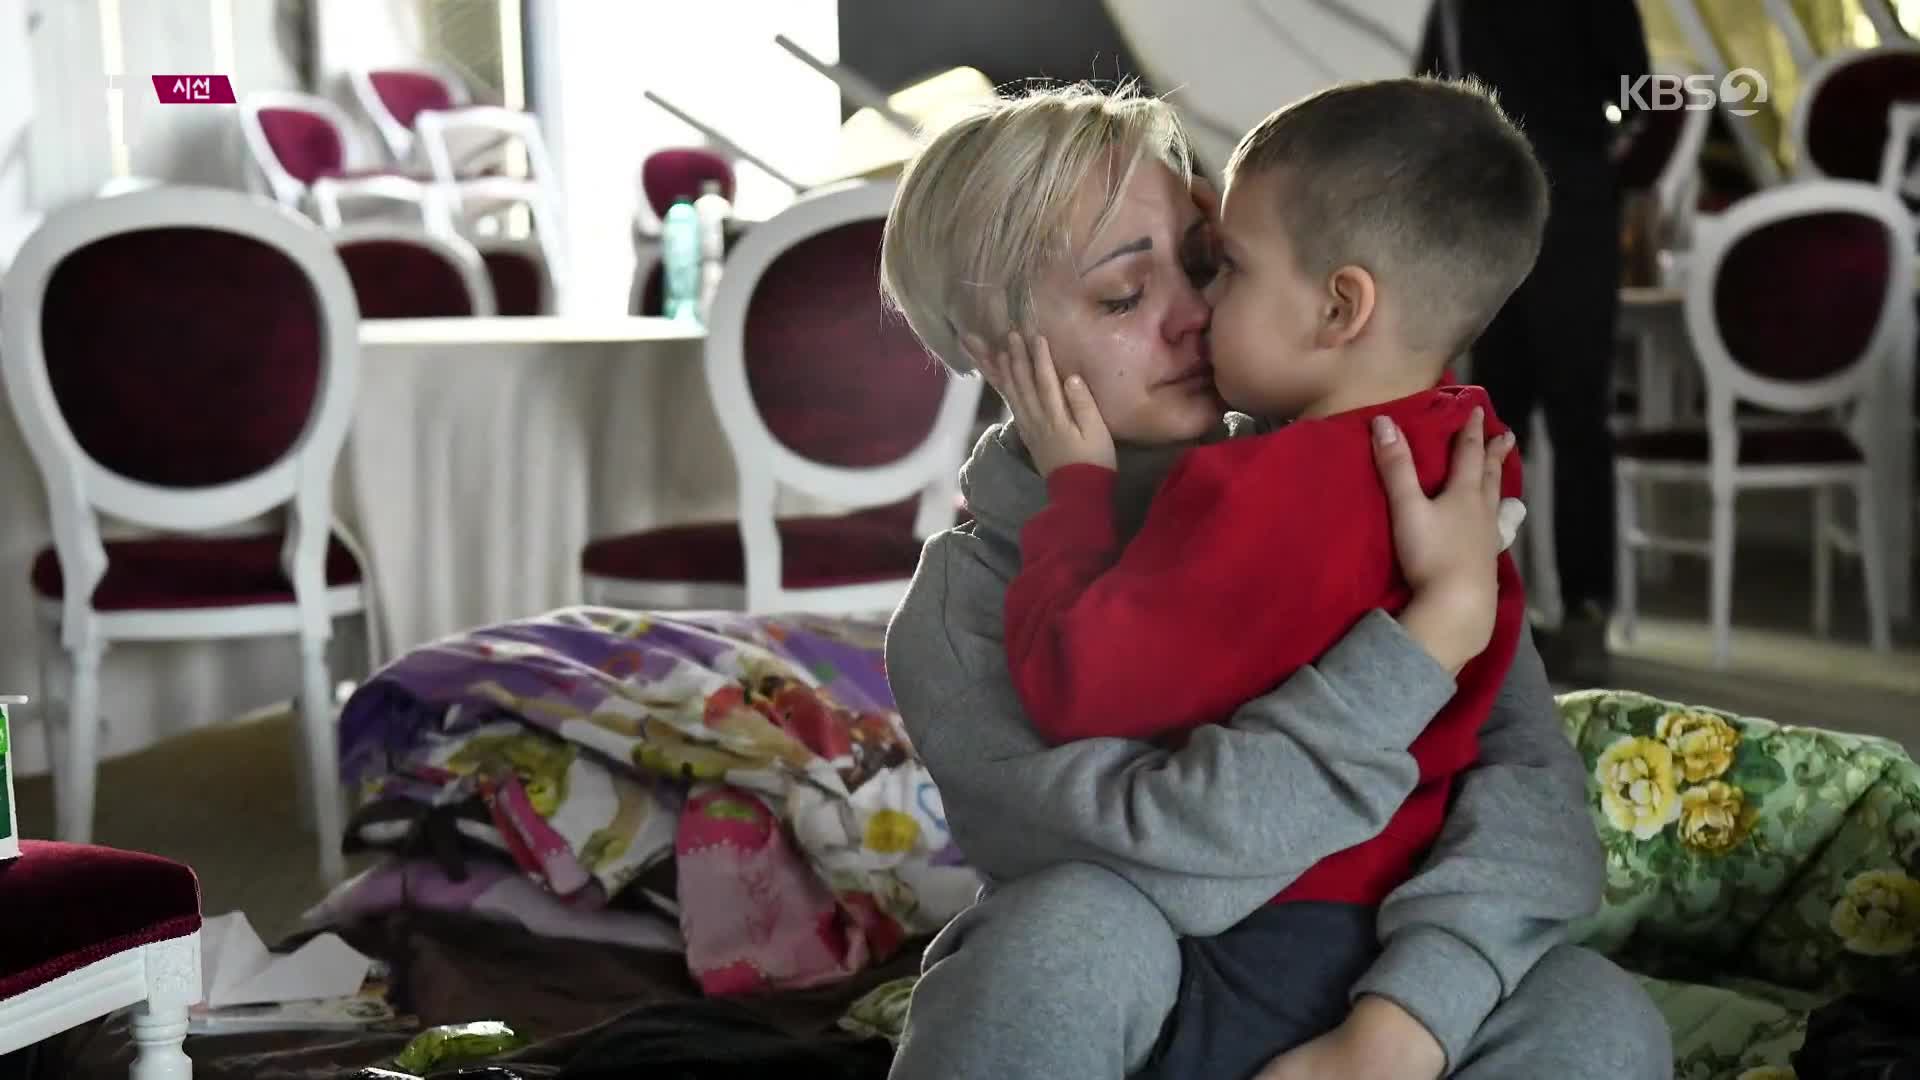 [ET] 우크라 난민 절반이 ‘어린이’…부모 잃고, 피란길에